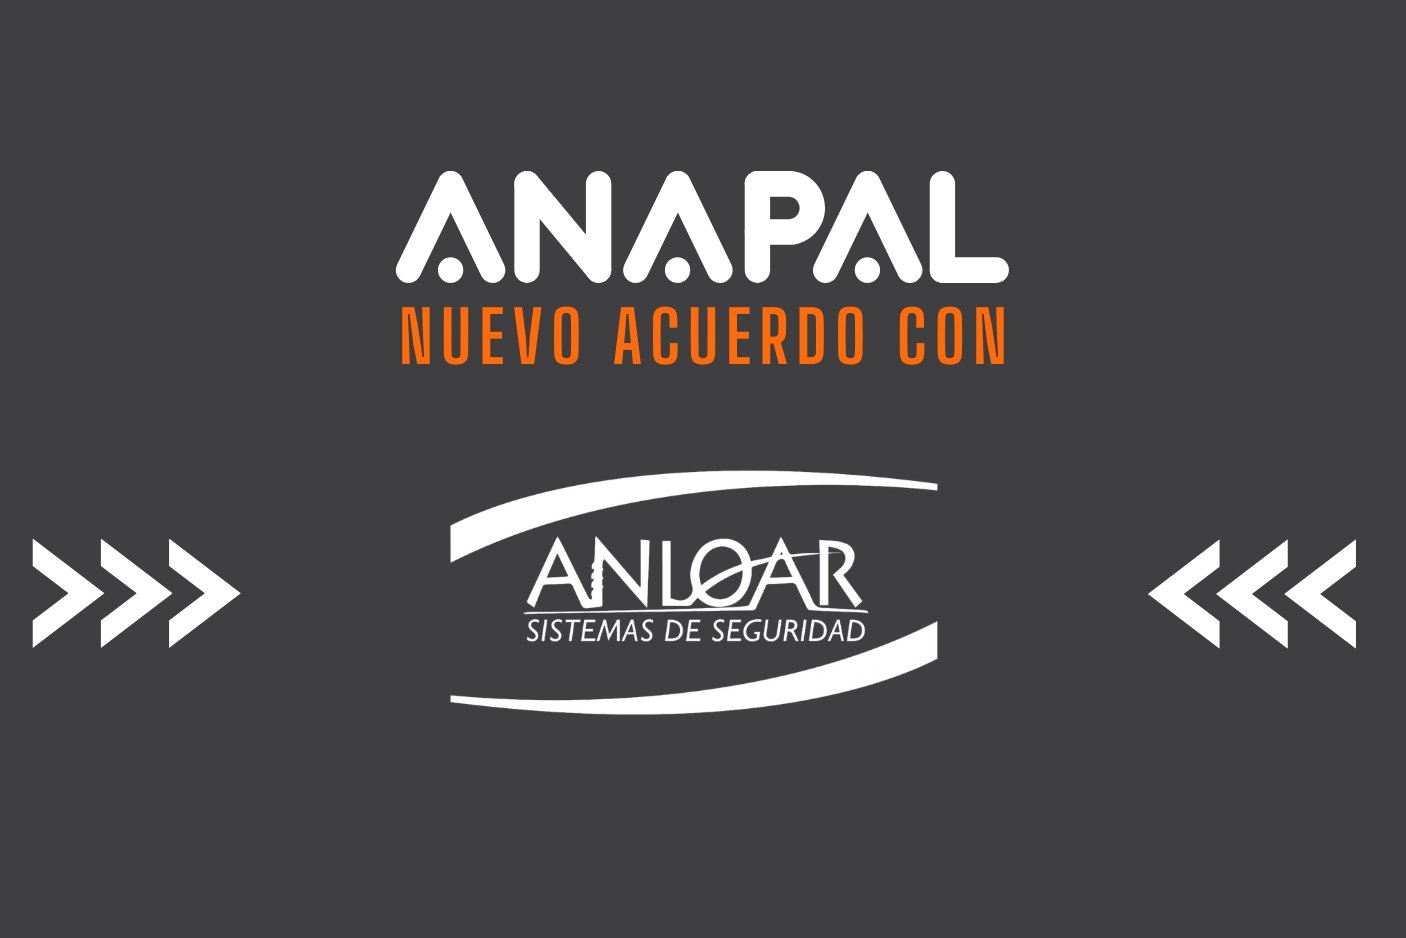 ANAPAL nuevo acuerdo empresa ANLOAR - blog de ANAPAL